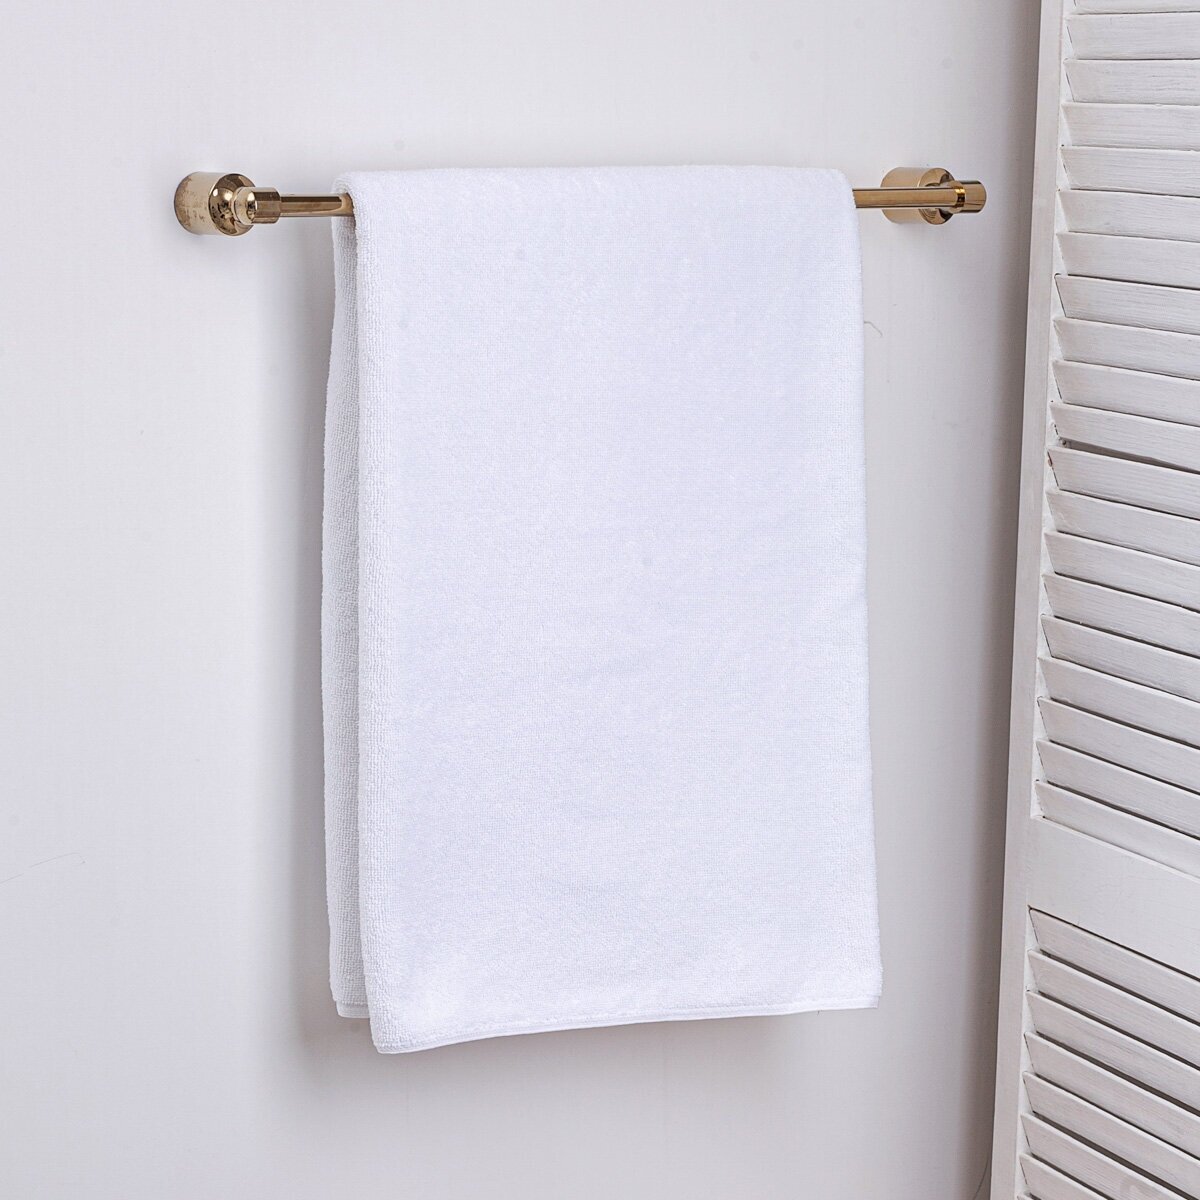 Махровое полотенце большое Sandal "люкс" 100*150 см цвет - белый.